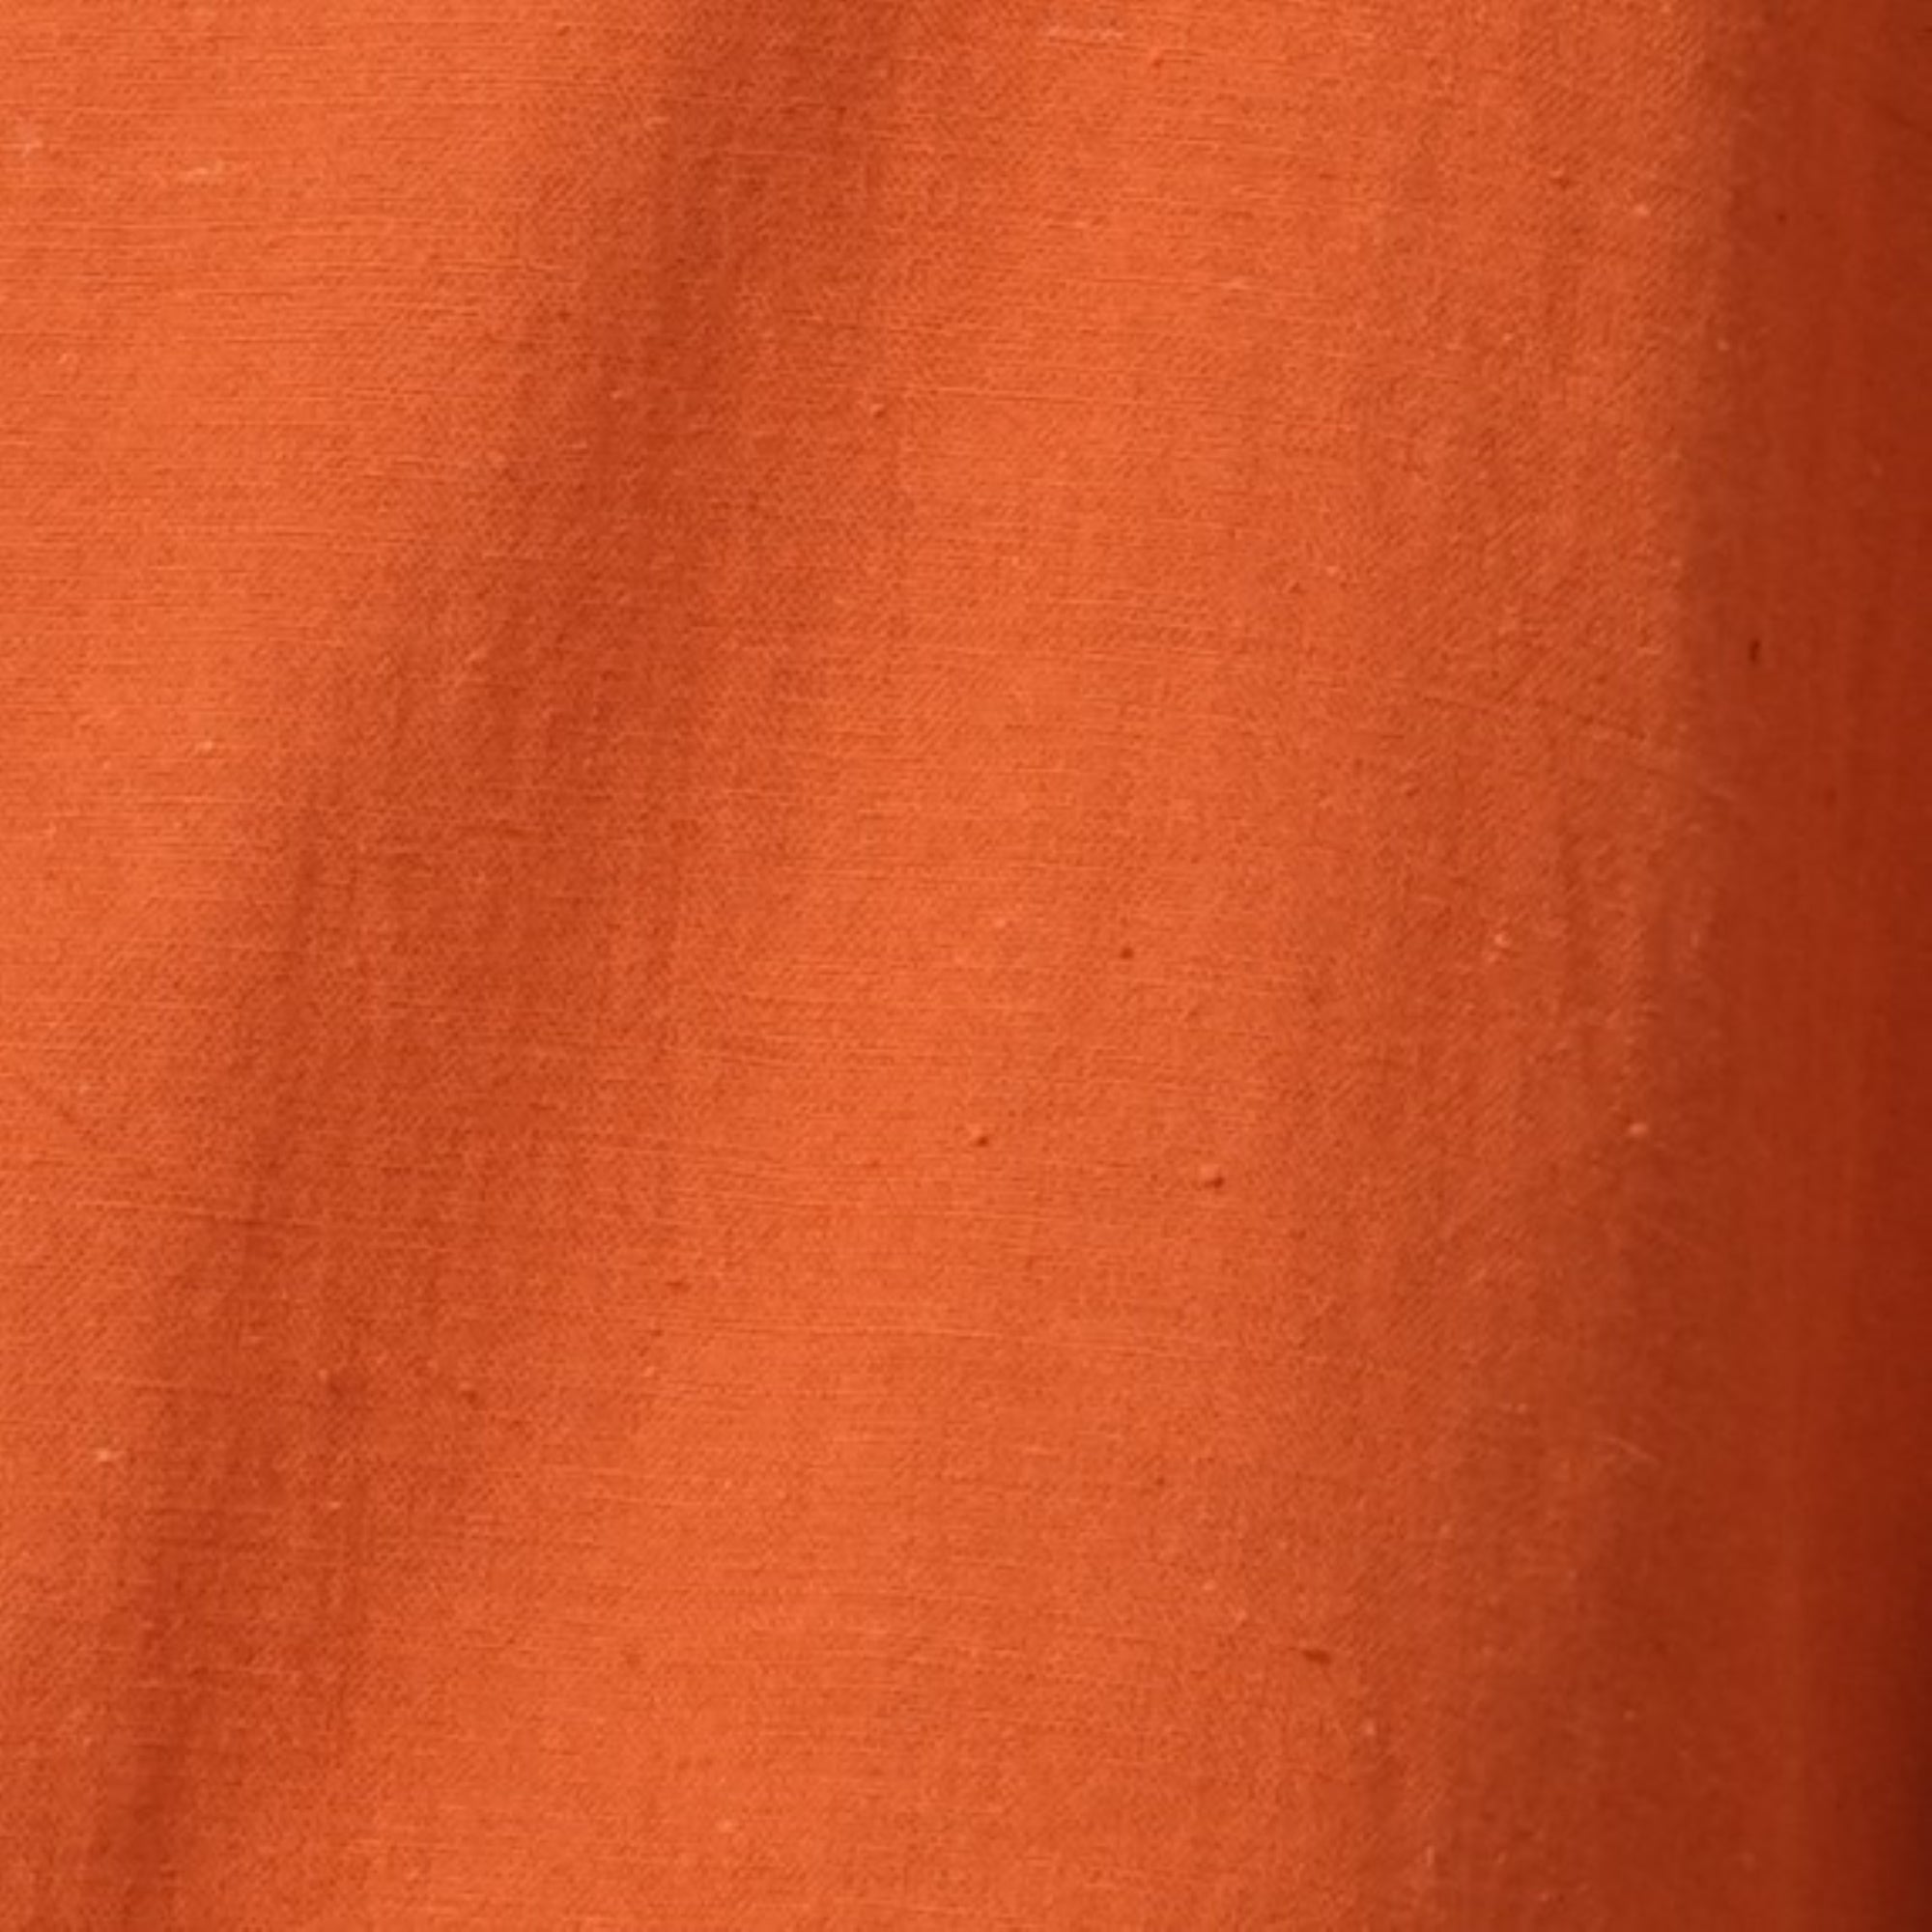 Jessica Shirt > Orange